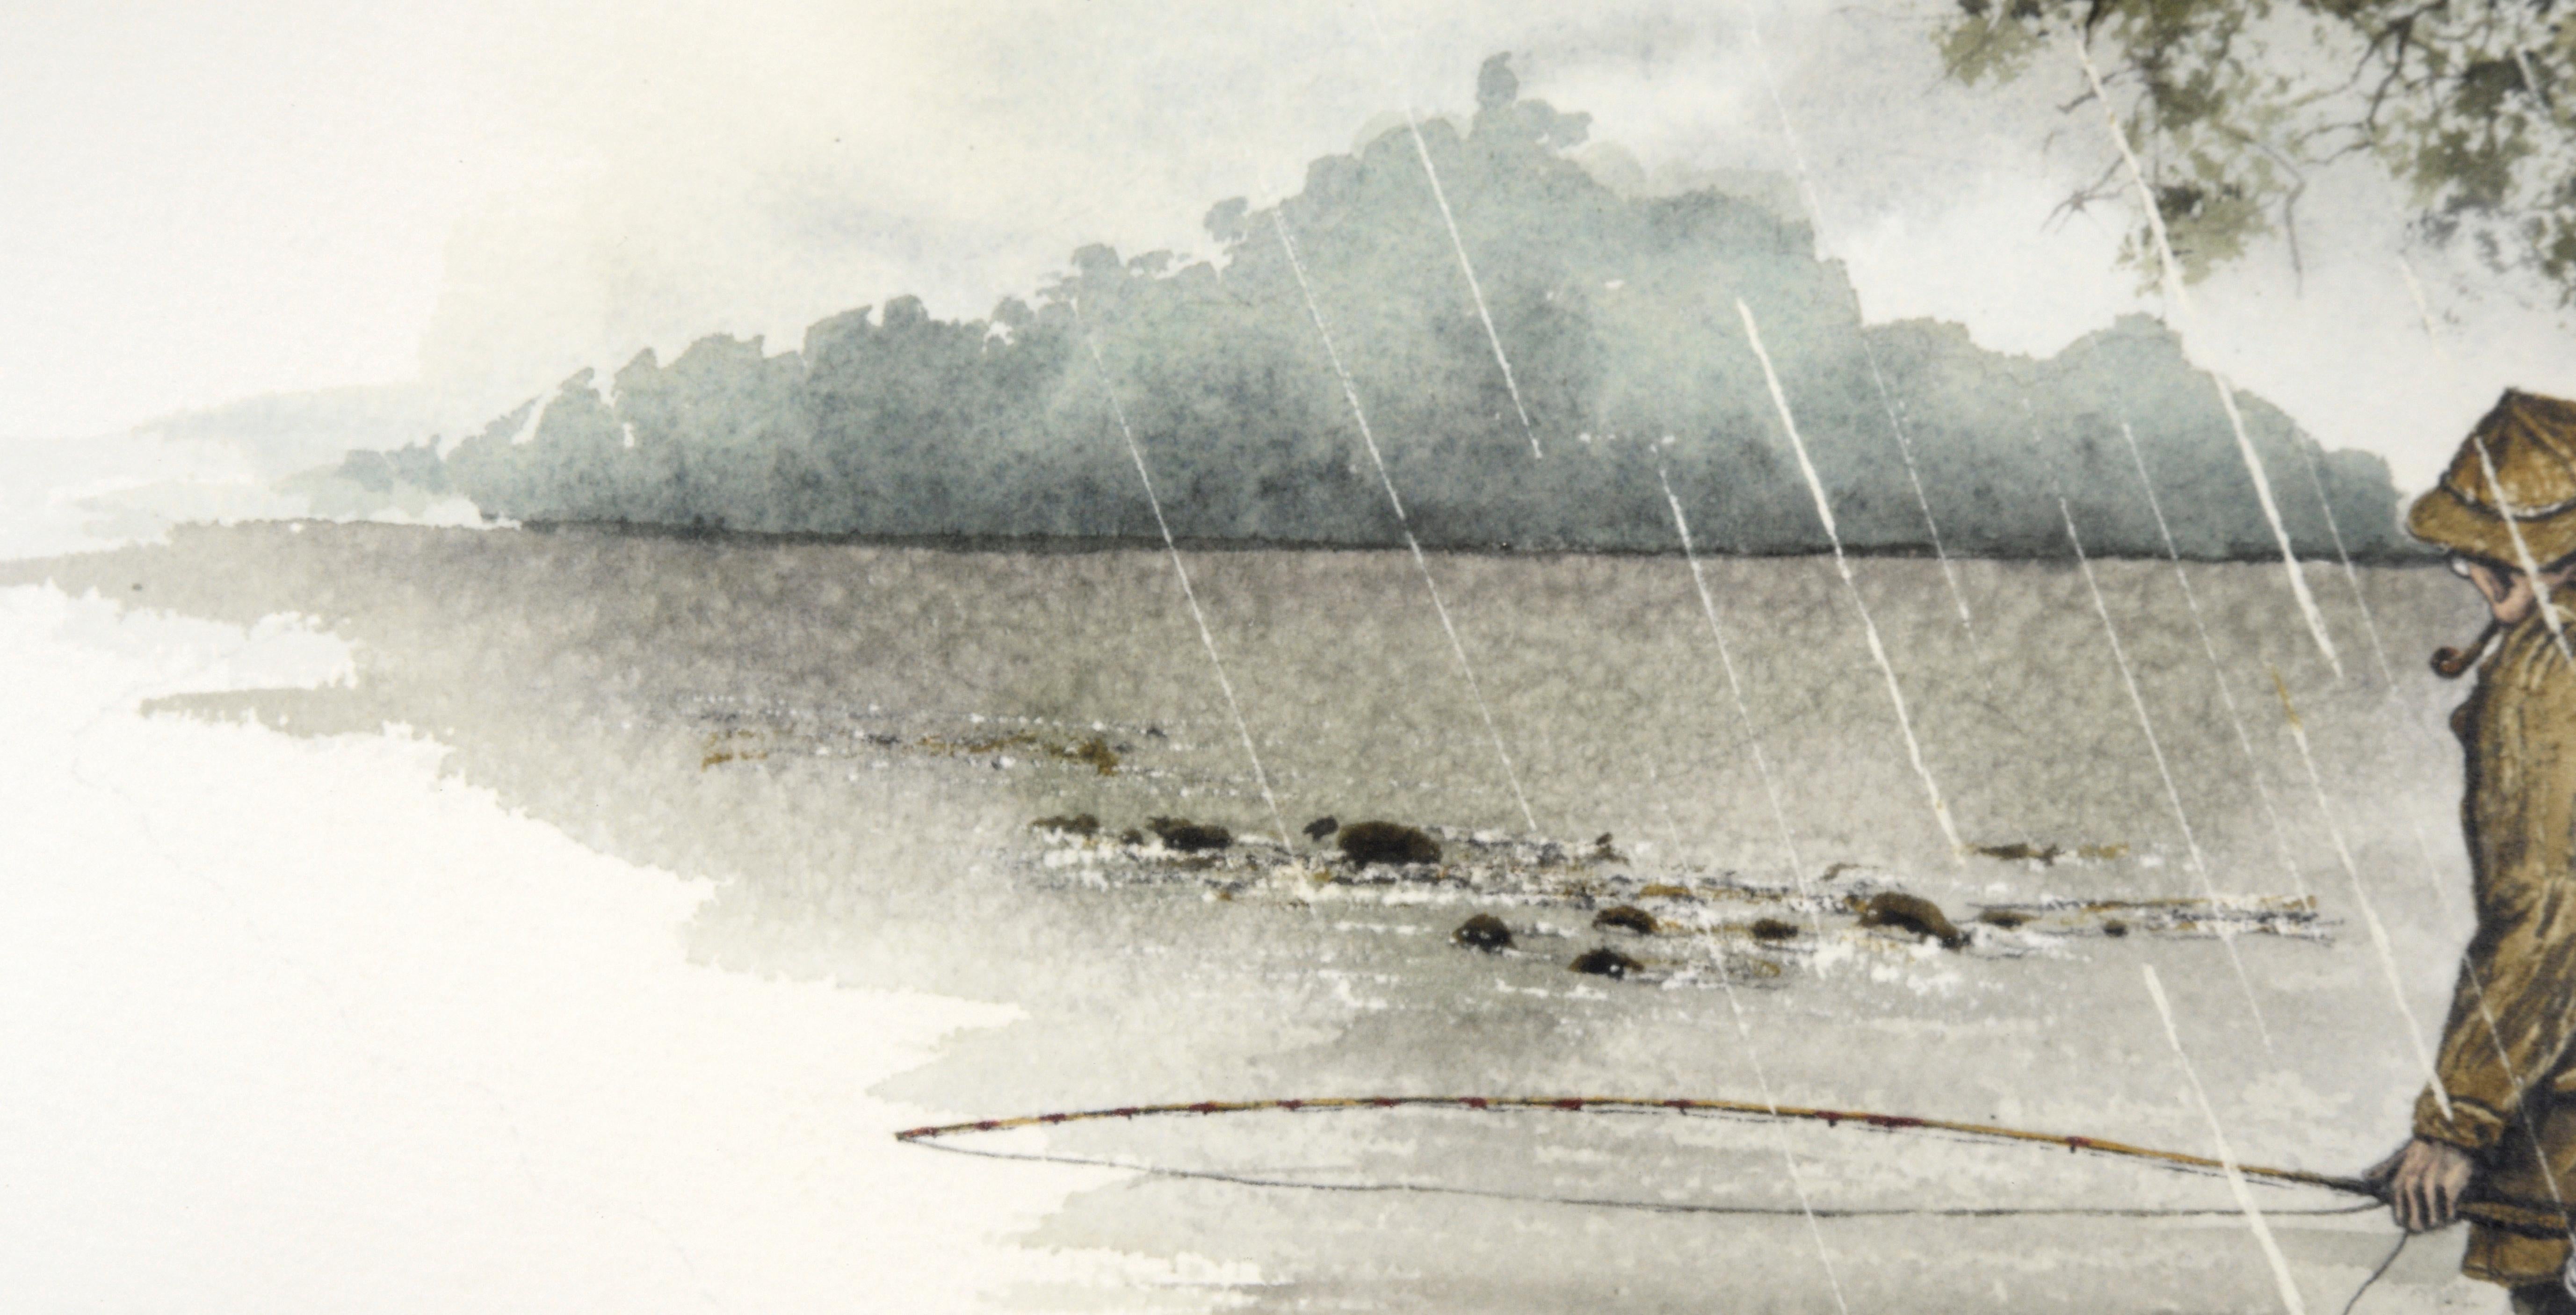 Zarte Darstellung eines Fliegenfischers im Regen von Harvey Eckert (Amerikaner, 1946-2018). Dieses sehr detaillierte Landschaftsaquarell zeigt einen Mann, der im Regen angelt und ins Wasser watet, während er unter einem Baum eine Pfeife raucht.